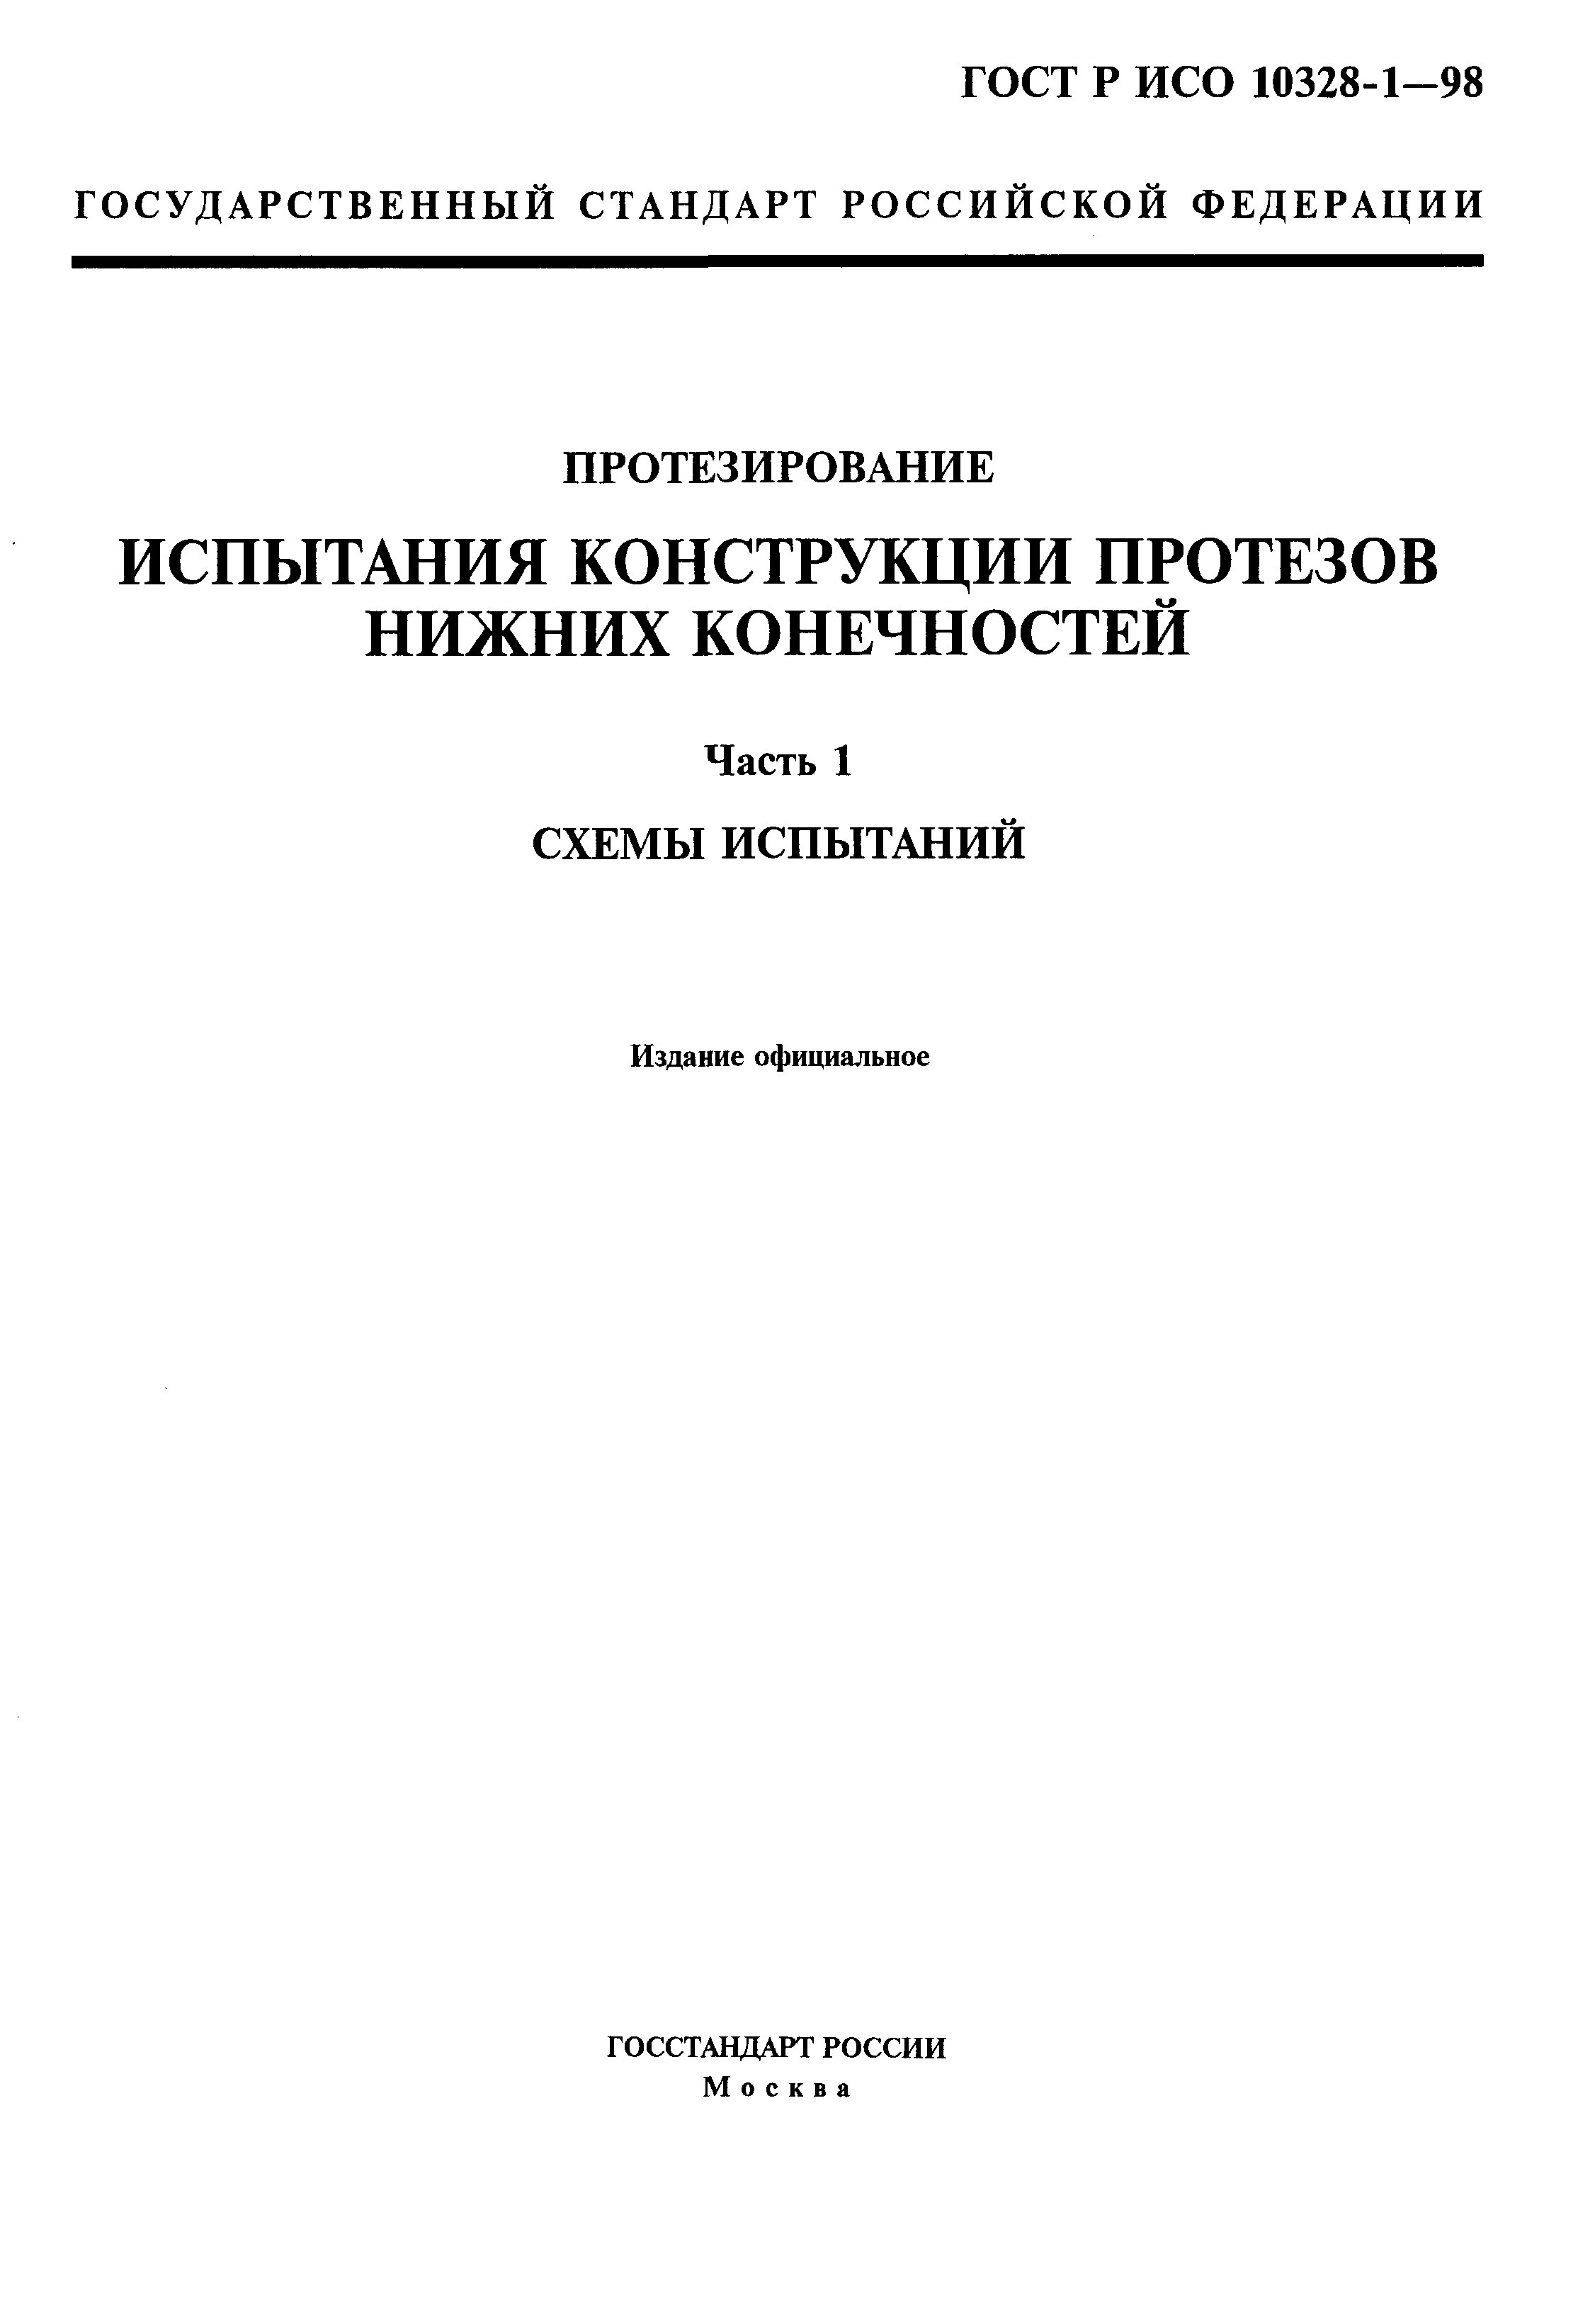 ГОСТ Р ИСО 10328-1-98